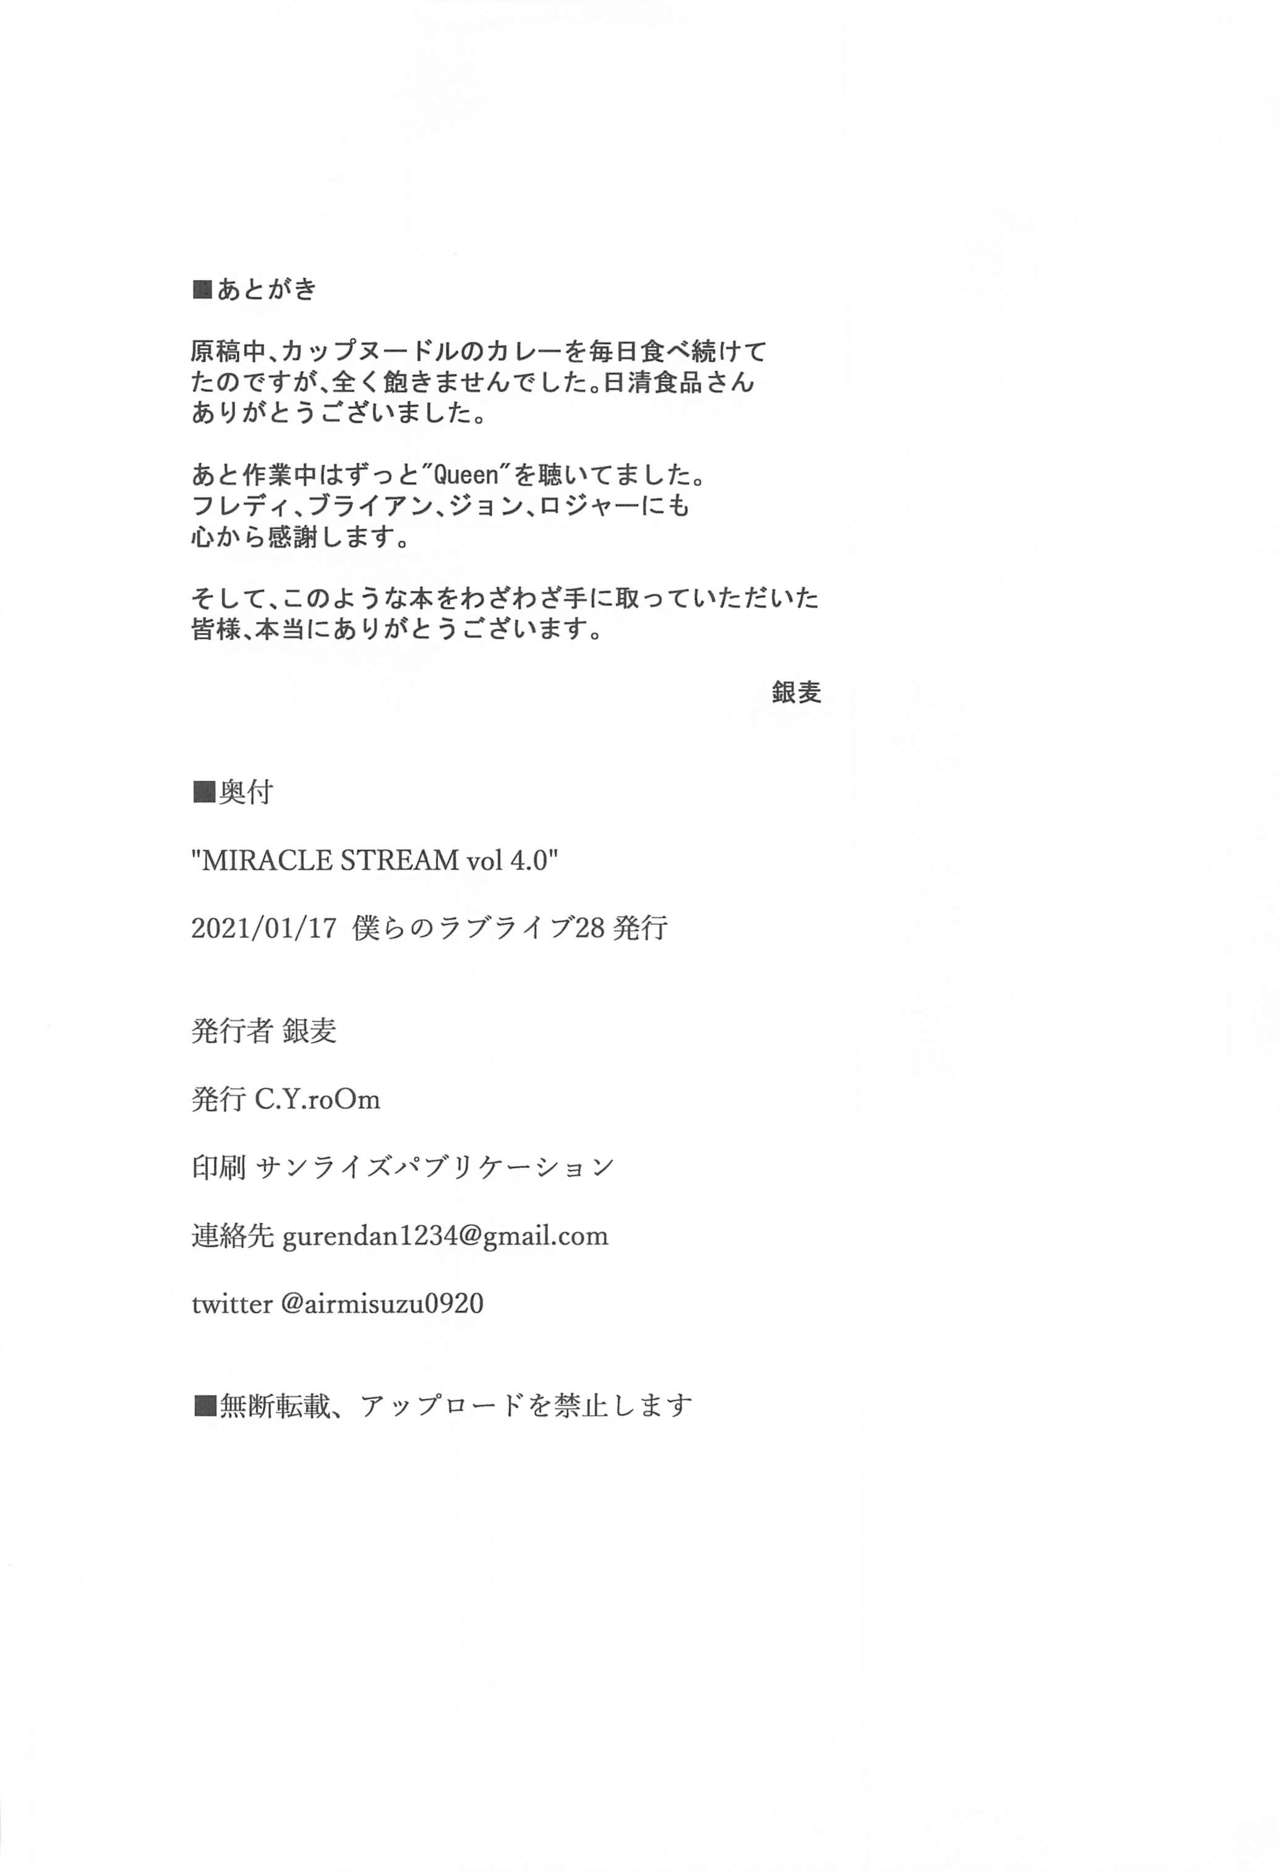 (僕らのラブライブ! 28) [C.Y.roOm (銀麦)] MIRACLE STREAM vol 4.0 (ラブライブ! サンシャイン!!)